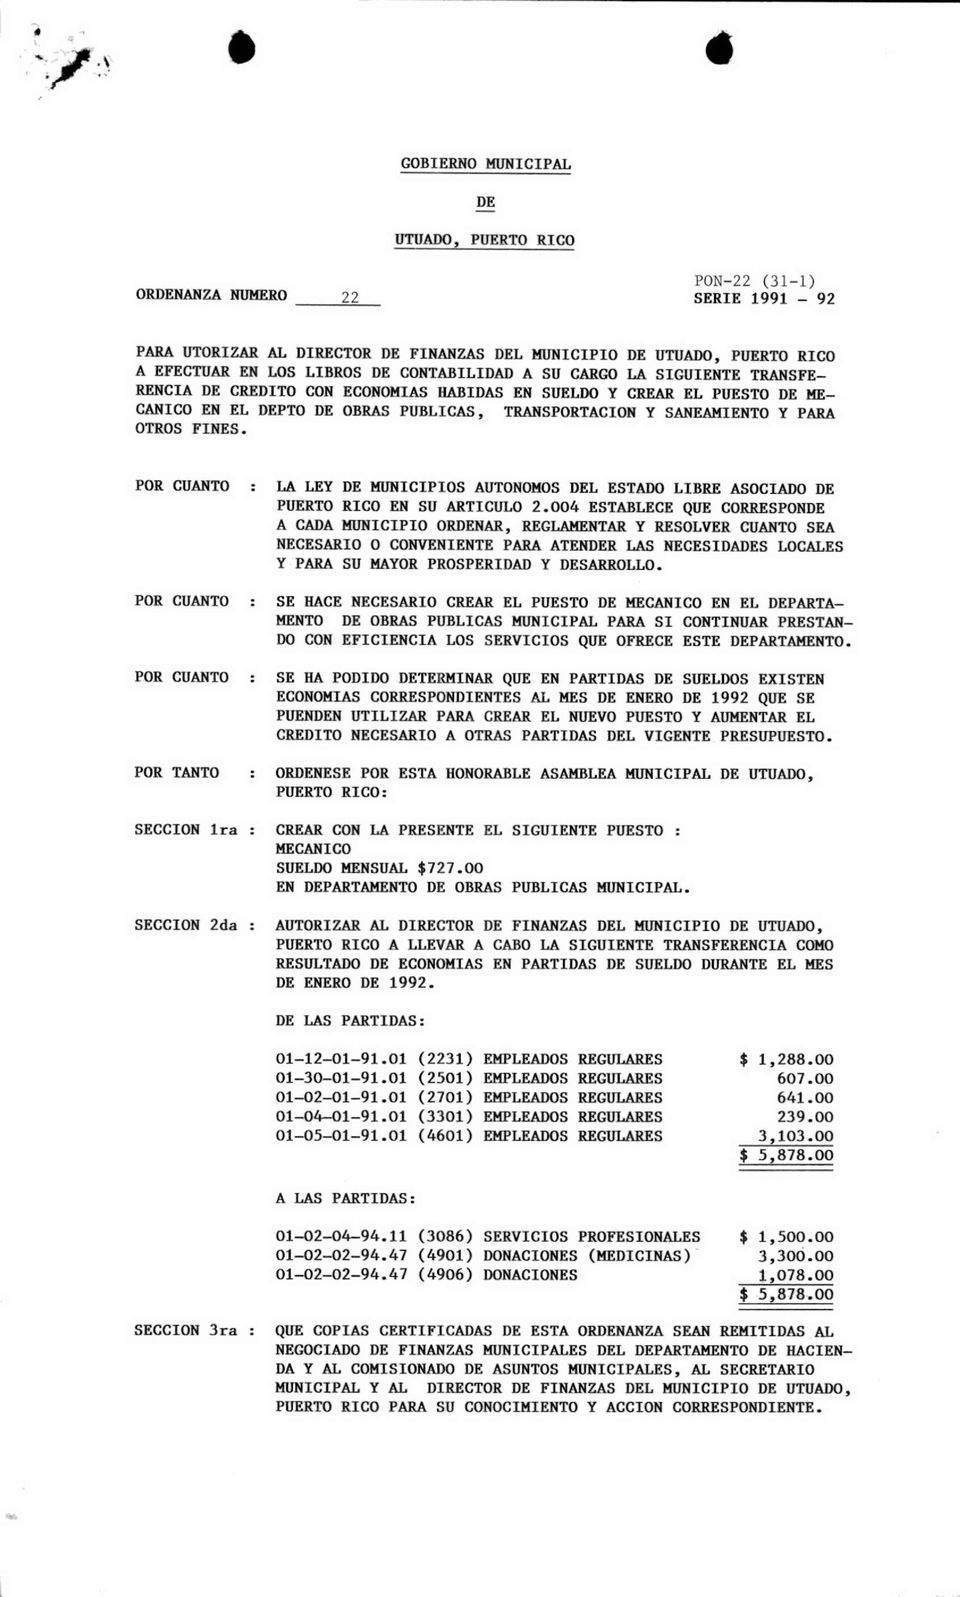 POR CUANTO : LA LEY DE MUNICIPIOS AUTONOMOS DEL ESTADO LIBRE ASOCIADO DE PUERTO RICO EN SU ARTICULO 2.